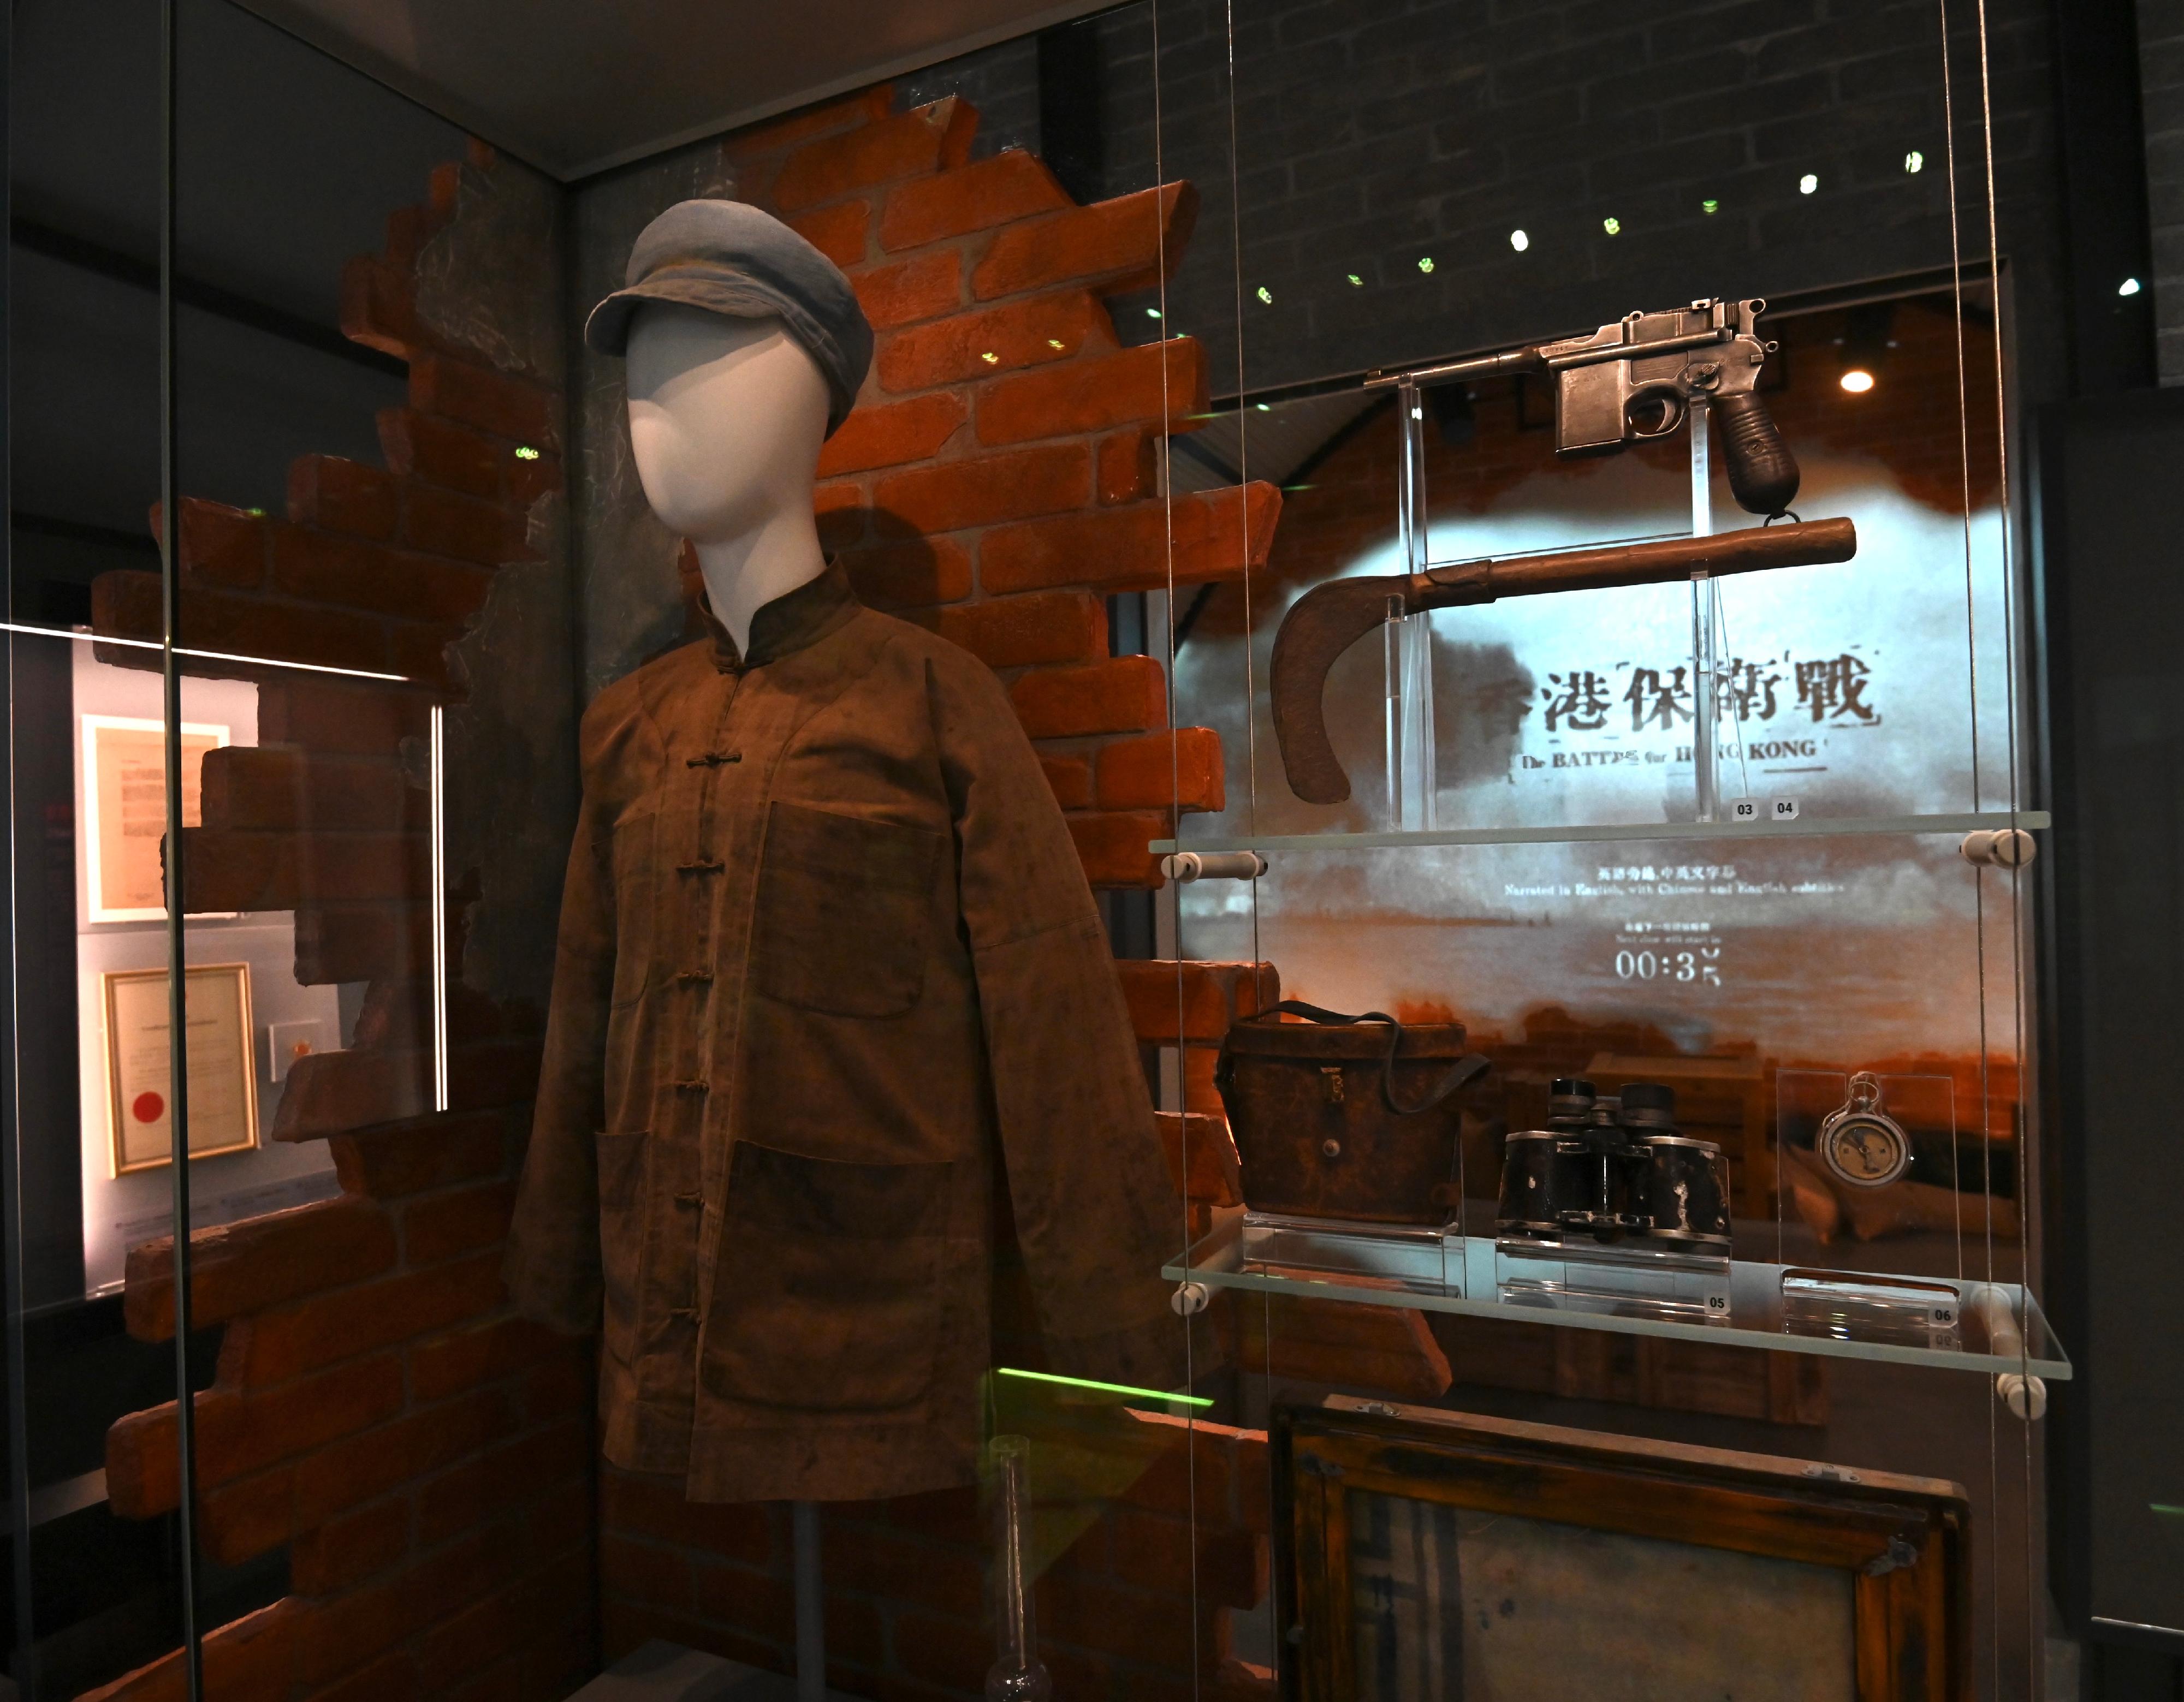 香港海防博物館於明日（十一月二十四日）起重新開放予市民參觀，並為觀眾帶來全新常設展覽「香港海防故事」。圖示「抗日游擊隊與敵後活動」展覽廳內展示的東江縱隊港九獨立大隊成員裝束。